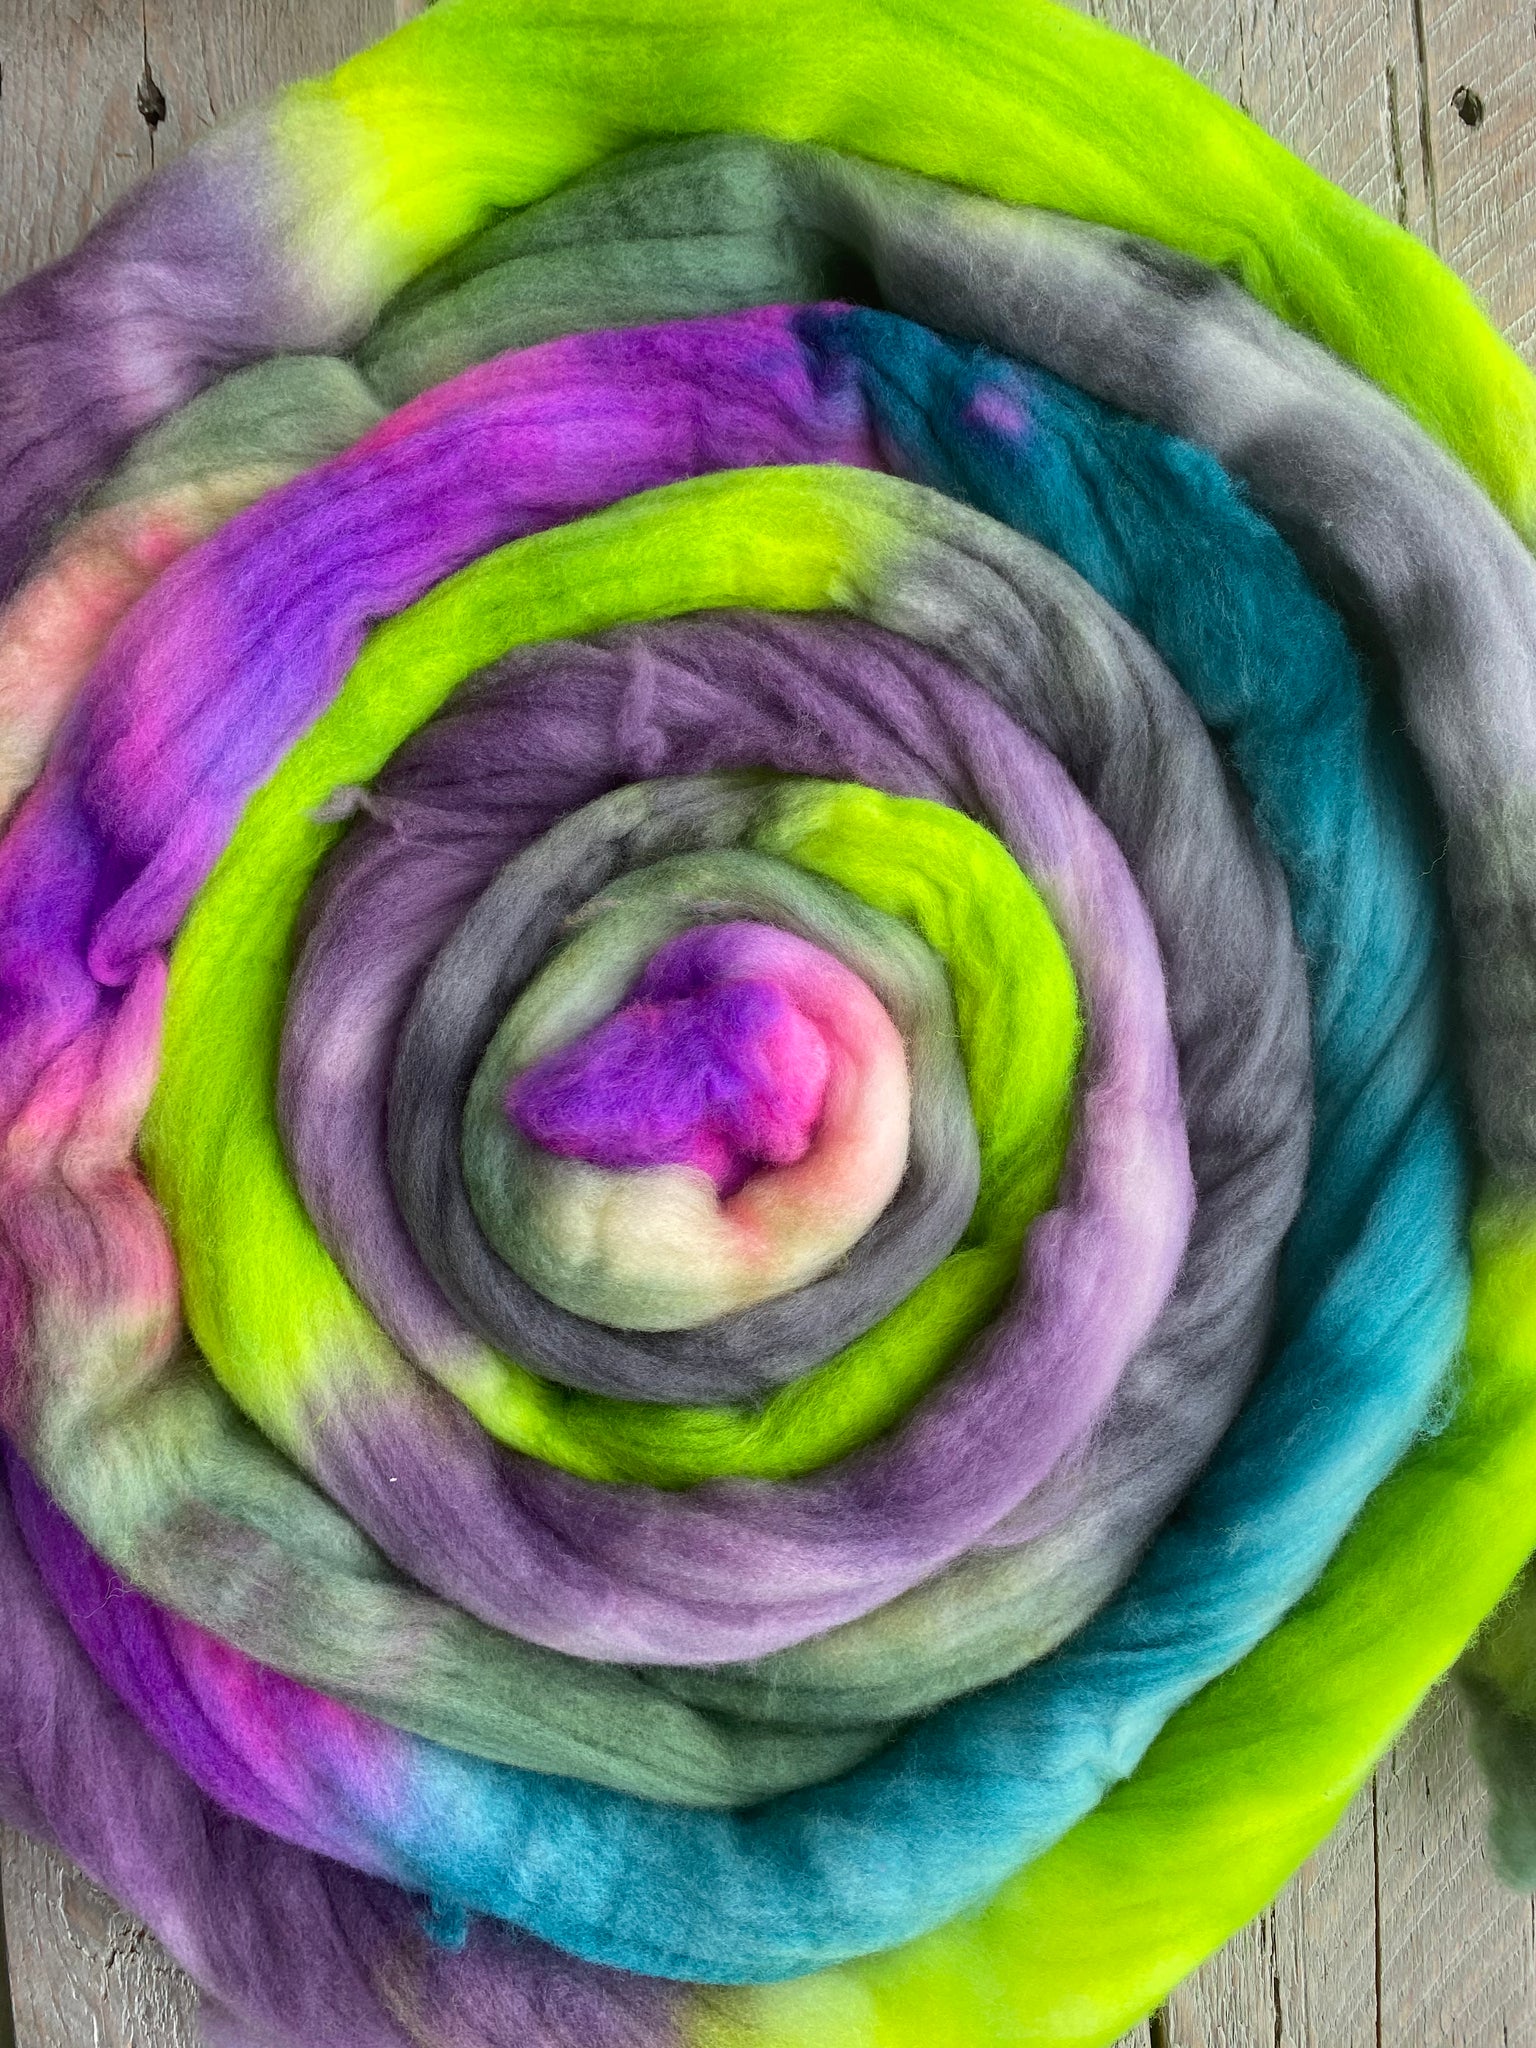 Ranarium dyed Merino Wool Roving